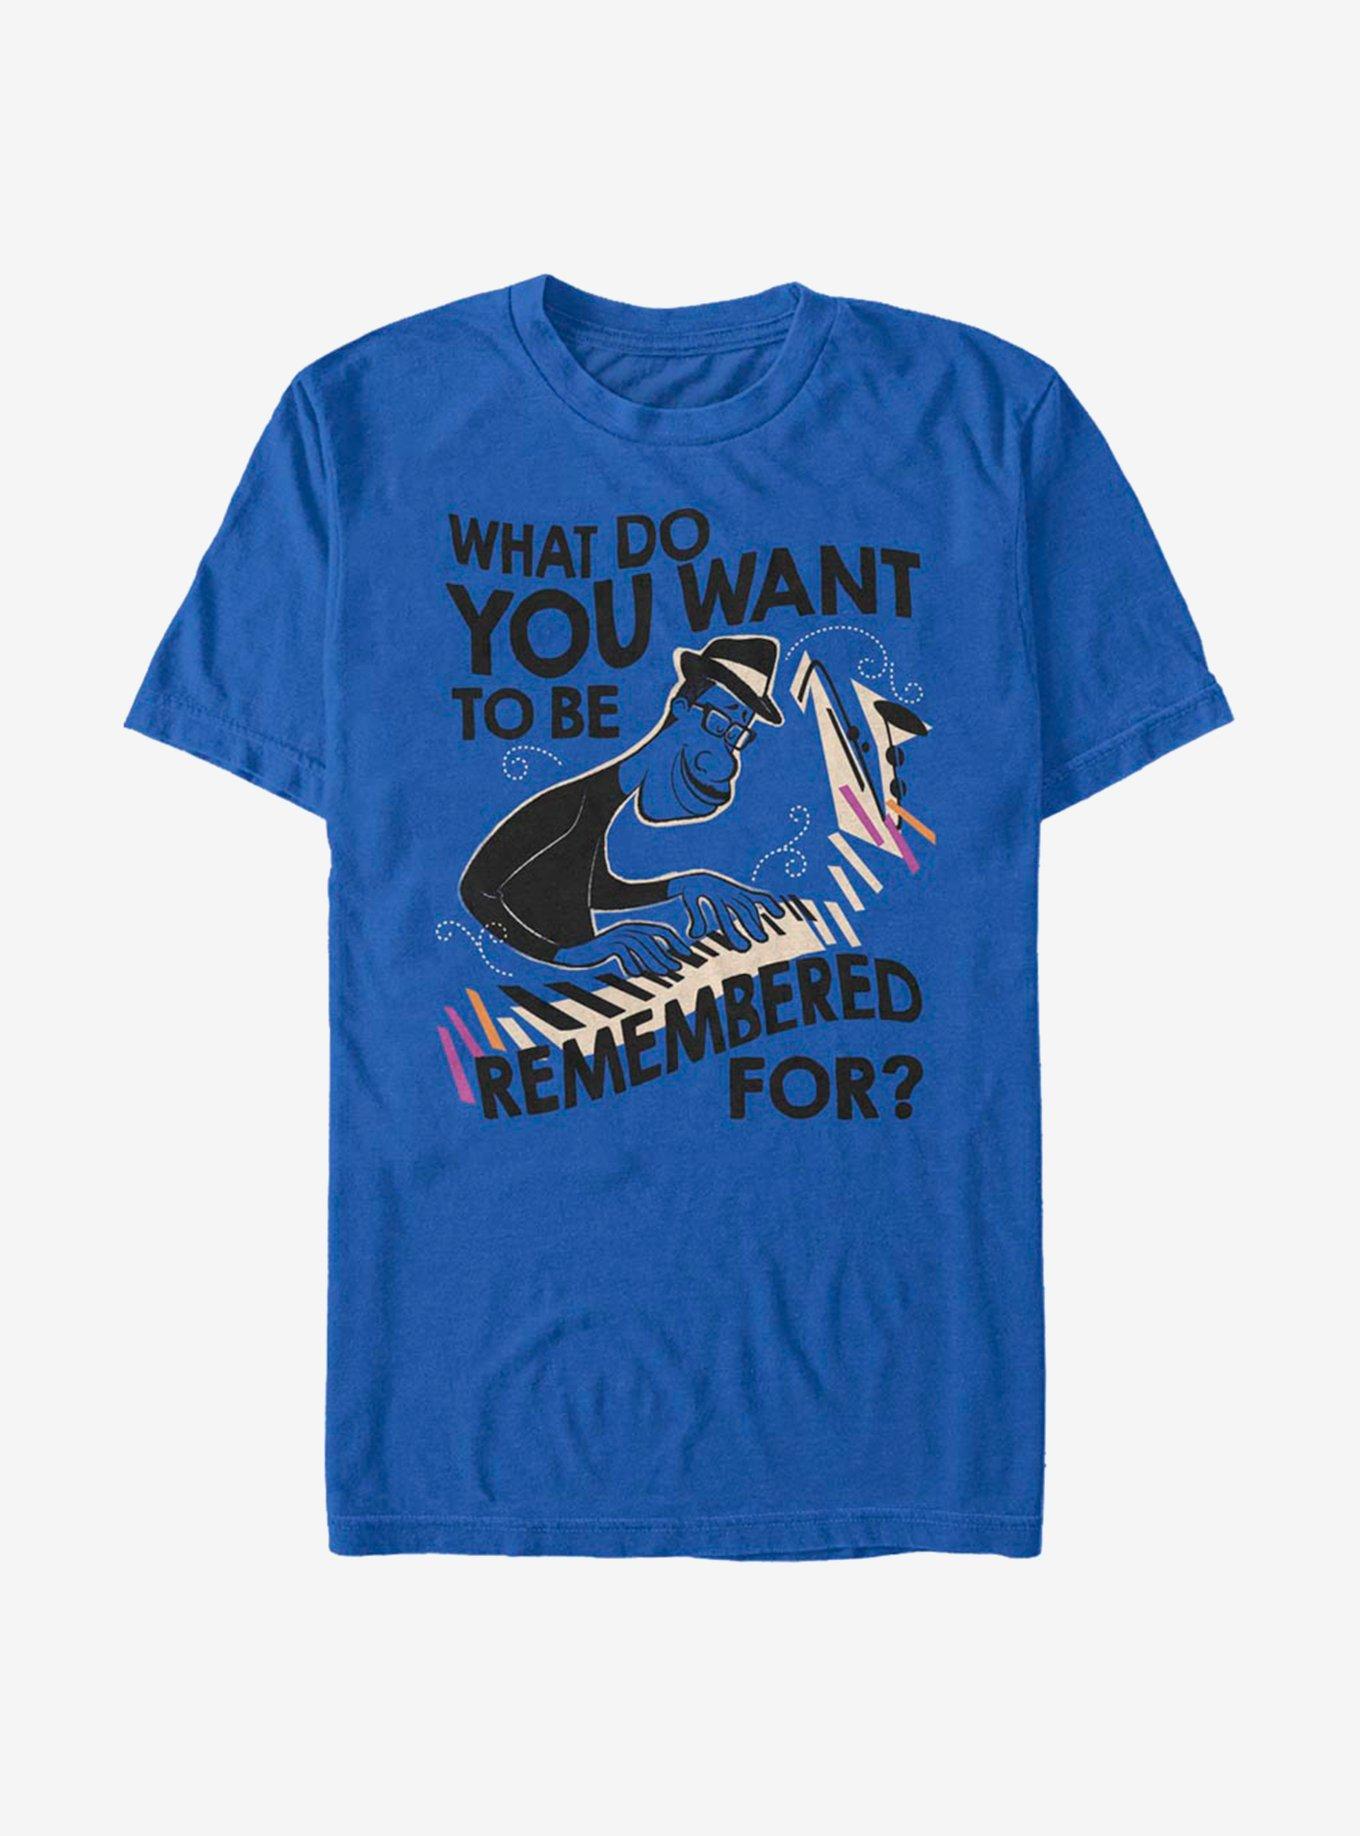 Disney Pixar Soul Remembered For T-Shirt, ROYAL, hi-res